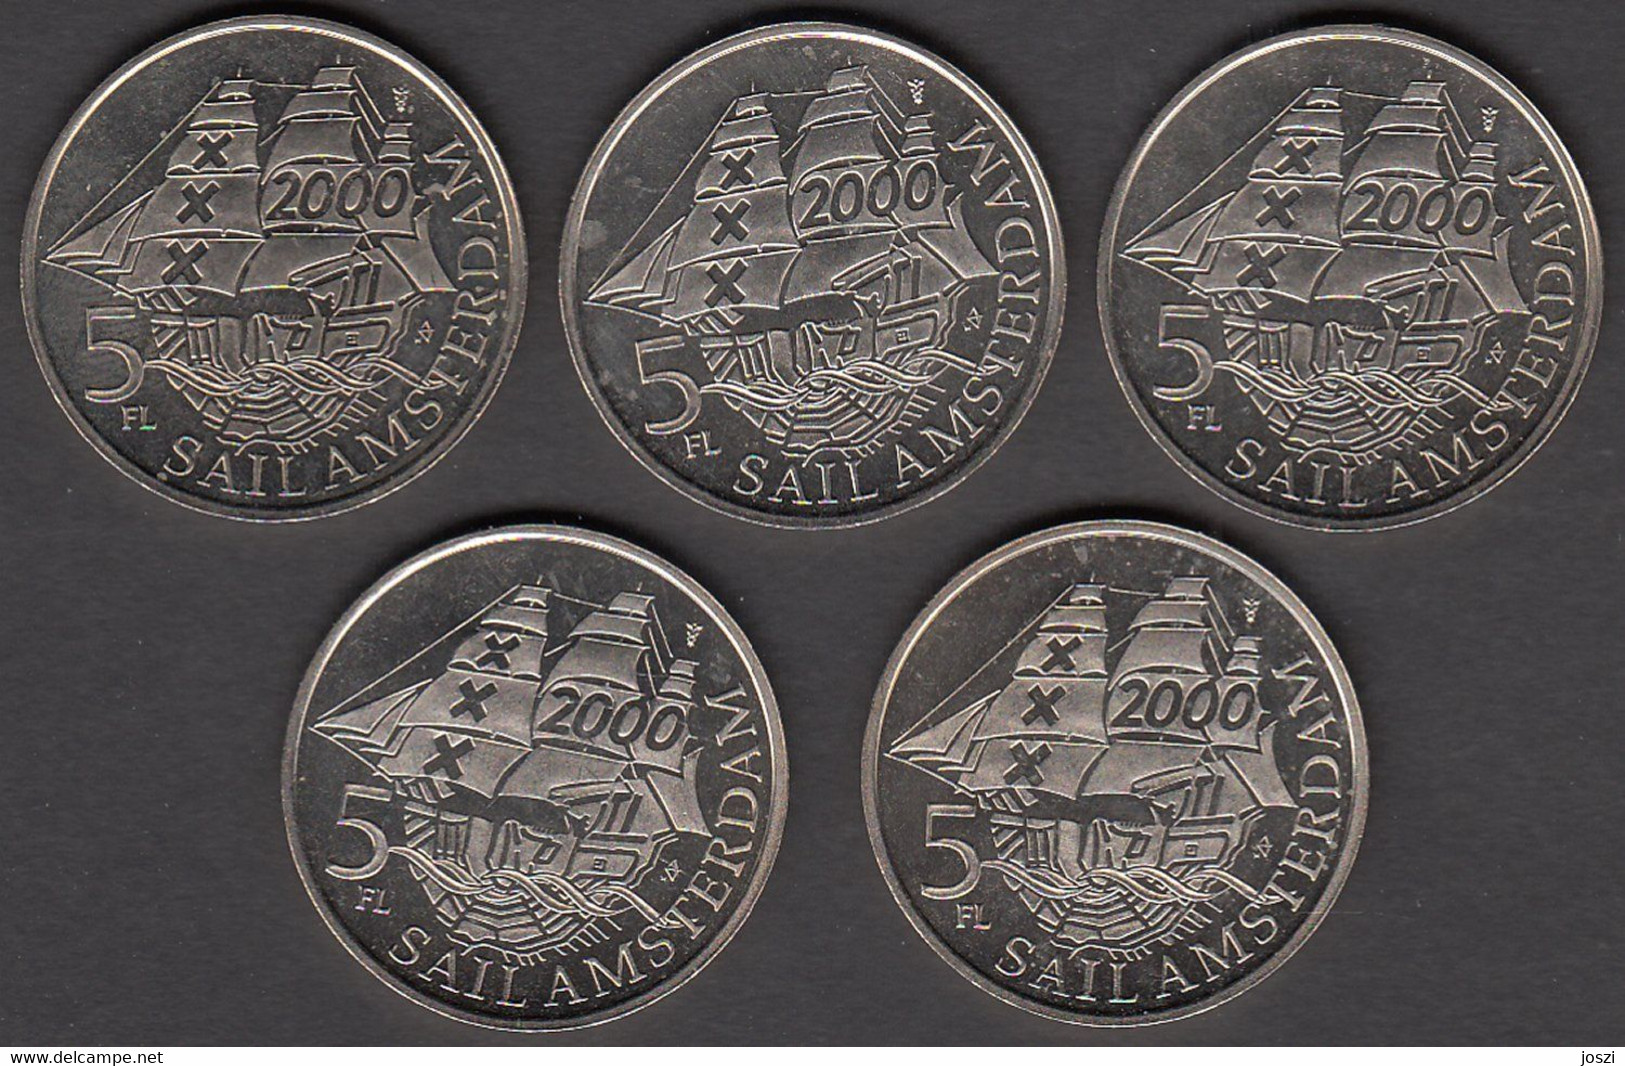 Nederland Set Penningen (5) Sail Amsterdam 2000 5 Florijn - Souvenir-Medaille (elongated Coins)